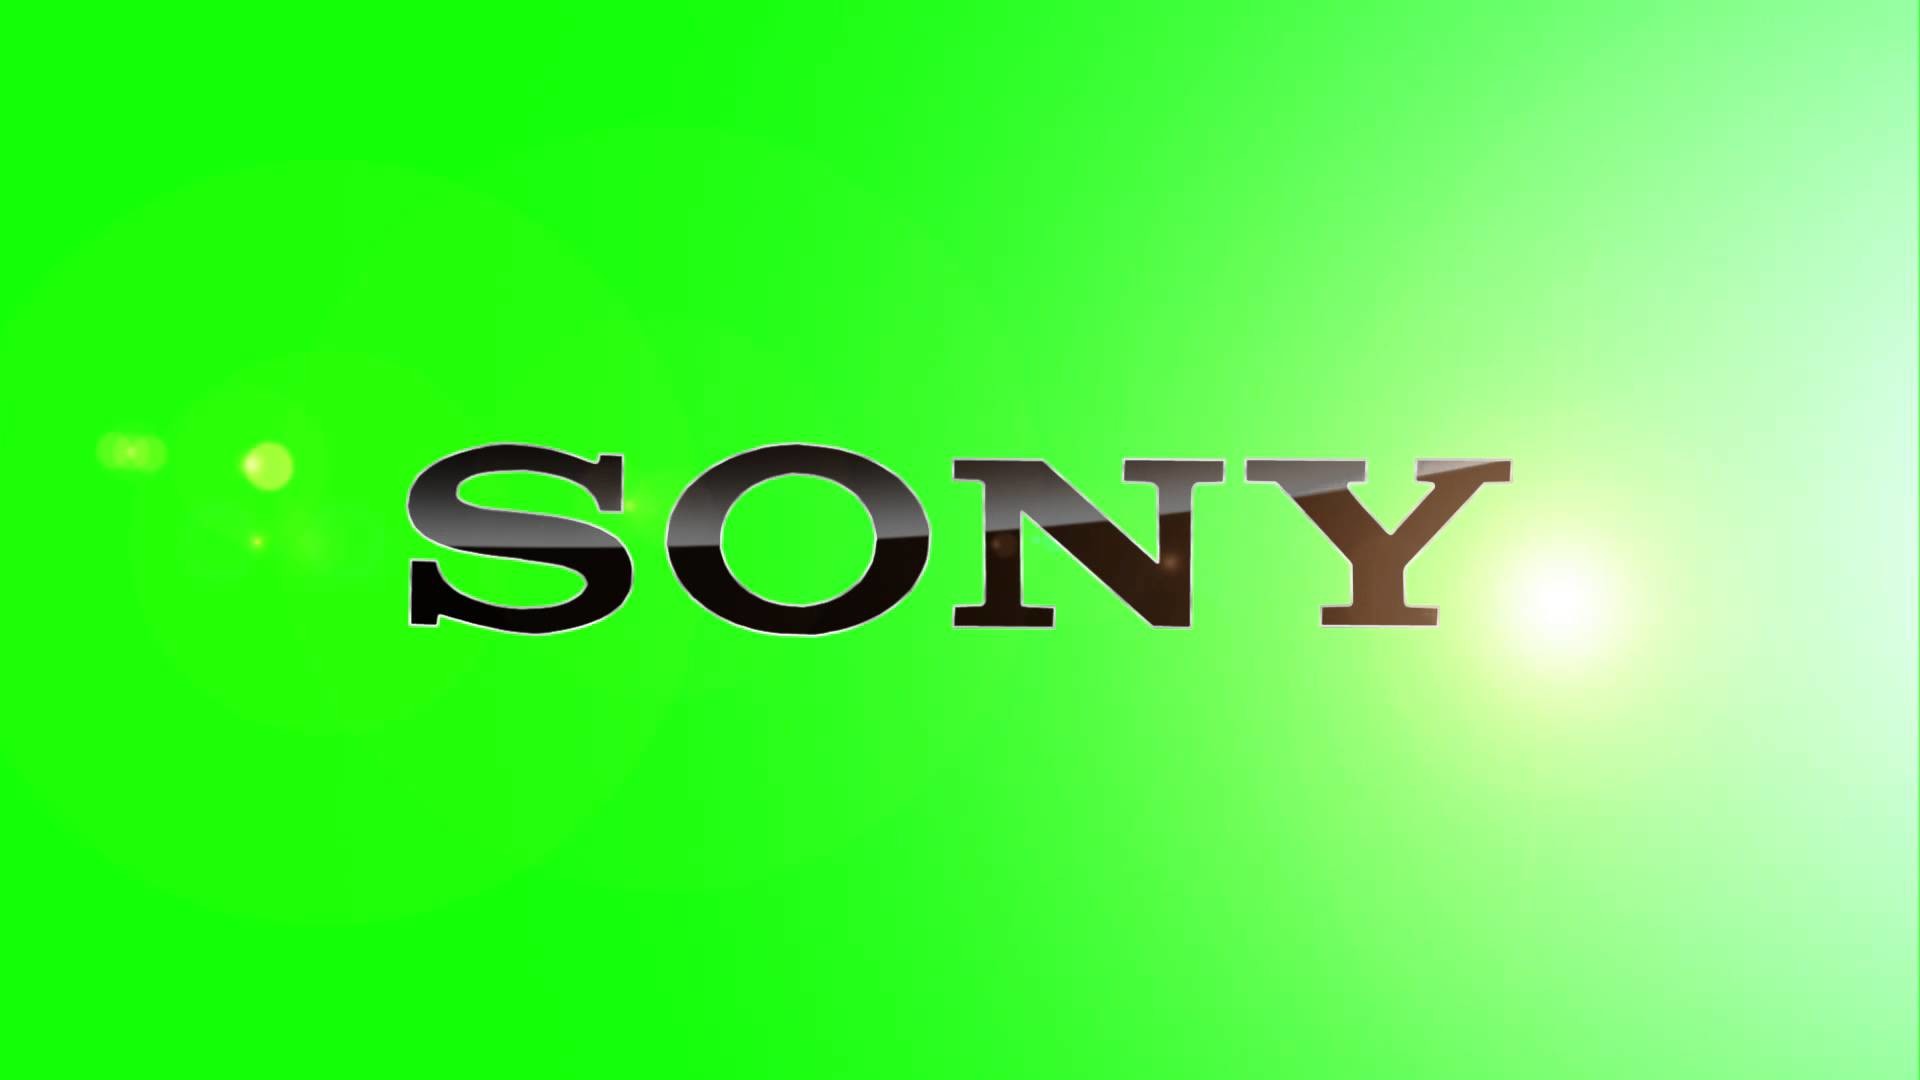 Sony HD Wallpaper